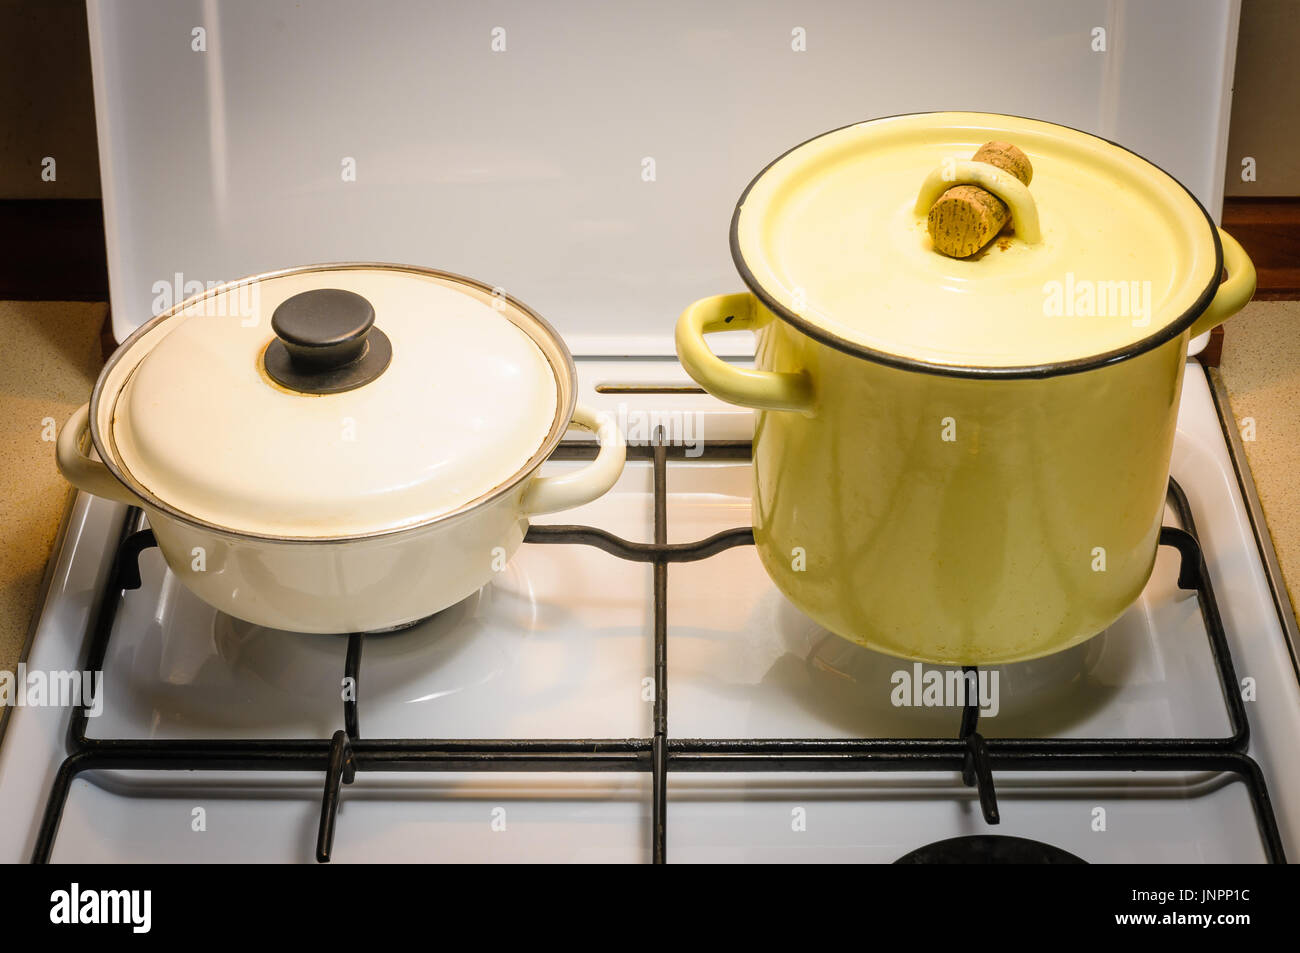 Un jaune et un pot blanc sur la cuisinière à gaz dans la cuisine Banque D'Images